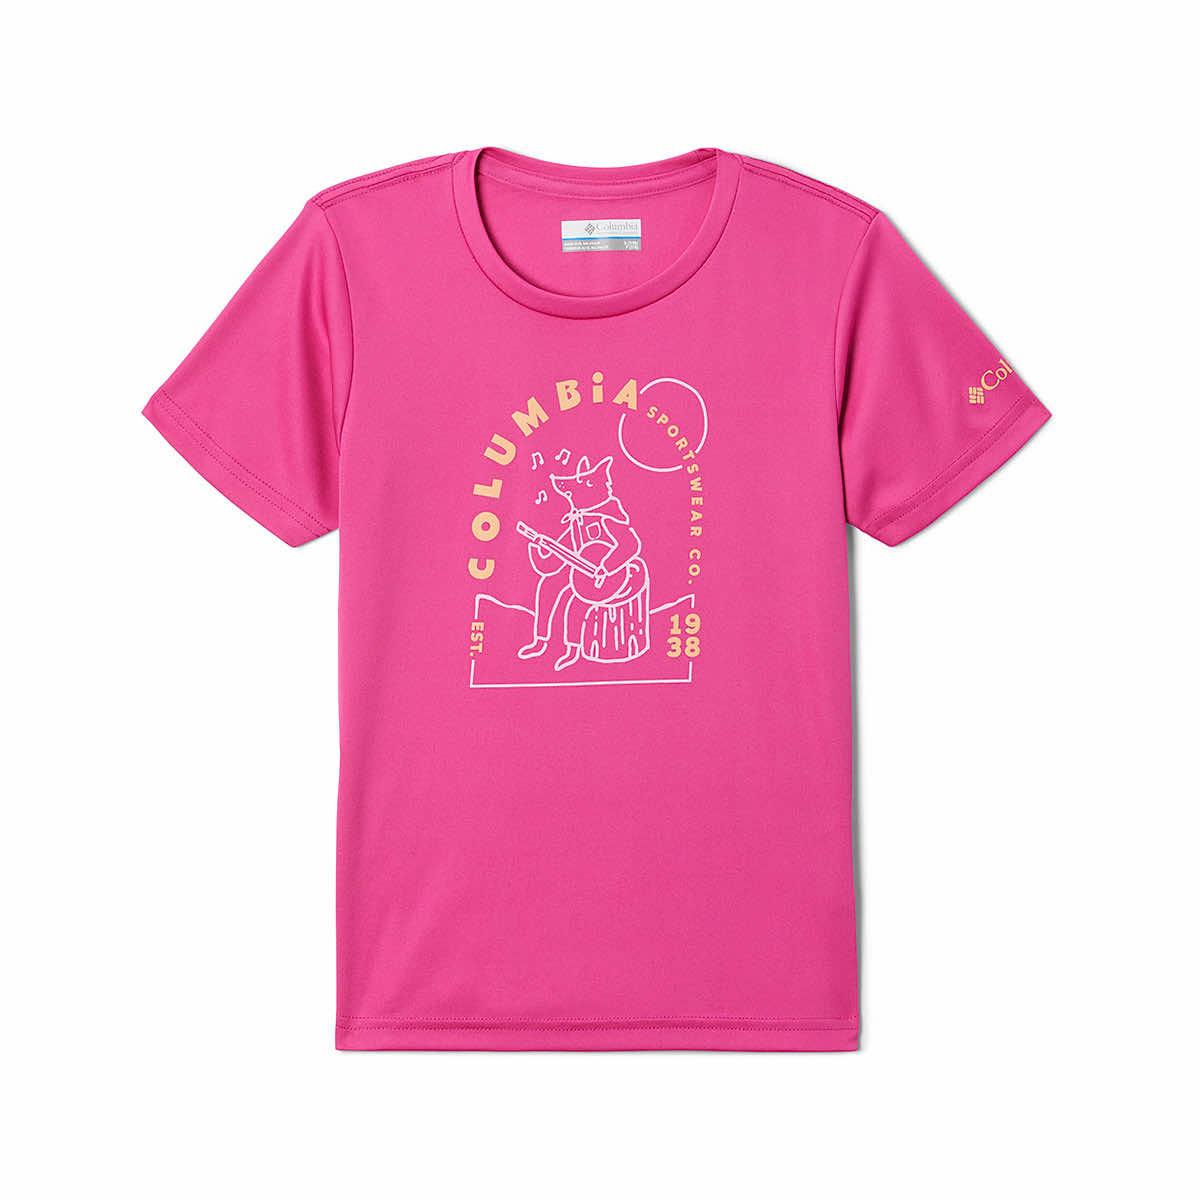  Girls ' Mirror Creek Short Sleeve T- Shirt